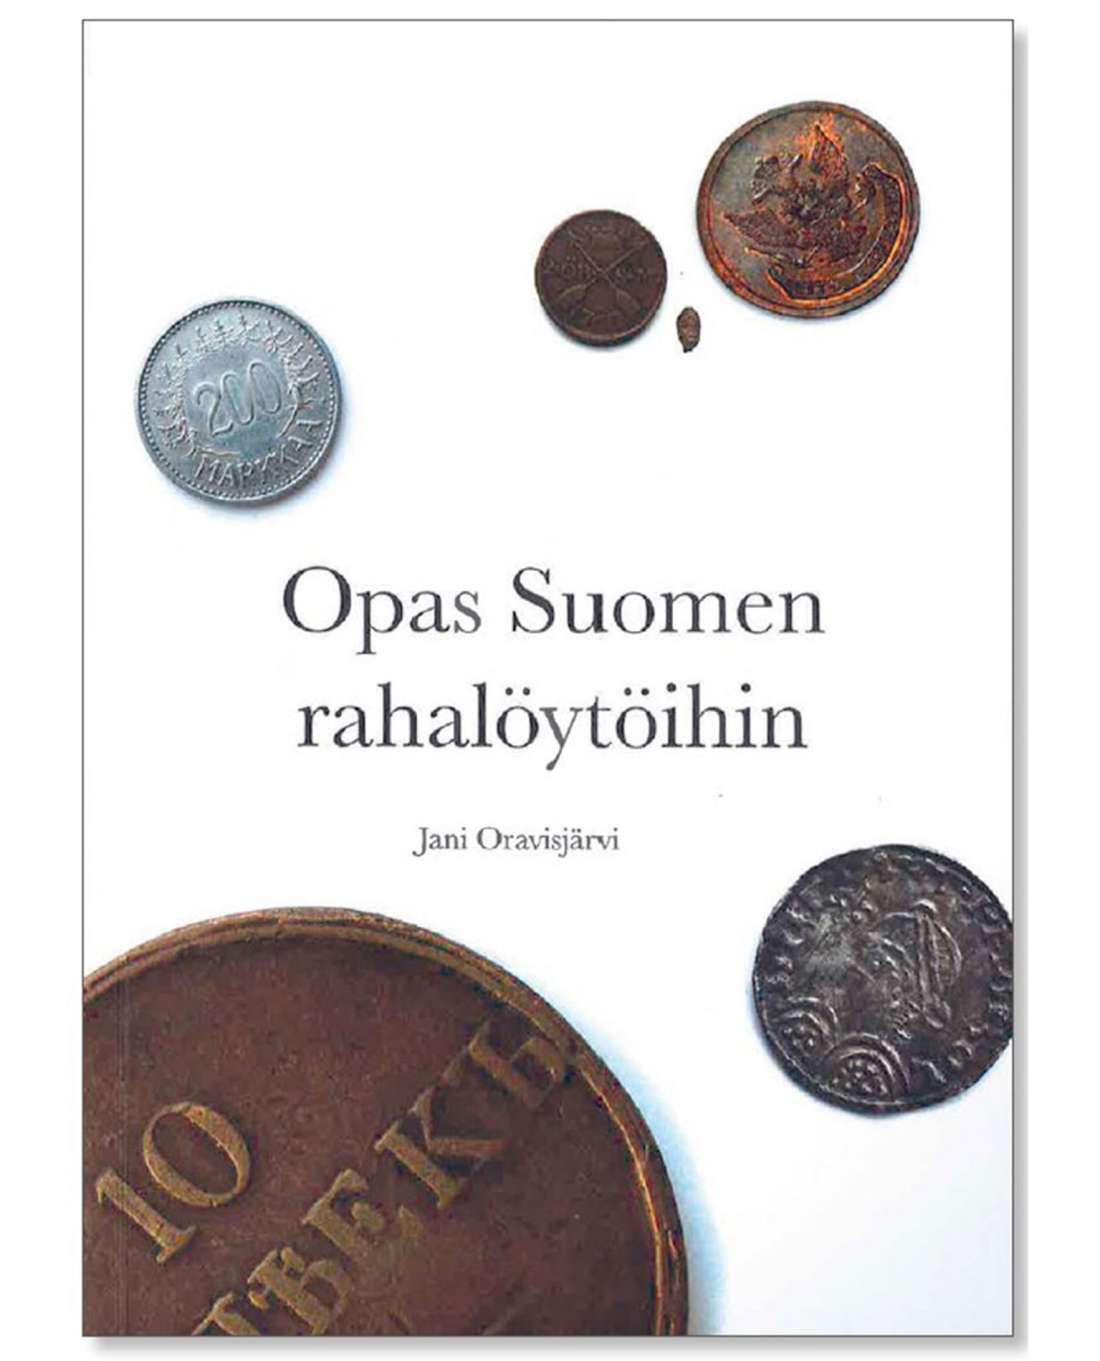 Opas Suomen rahalöytöihin, Oravisjärvi J.